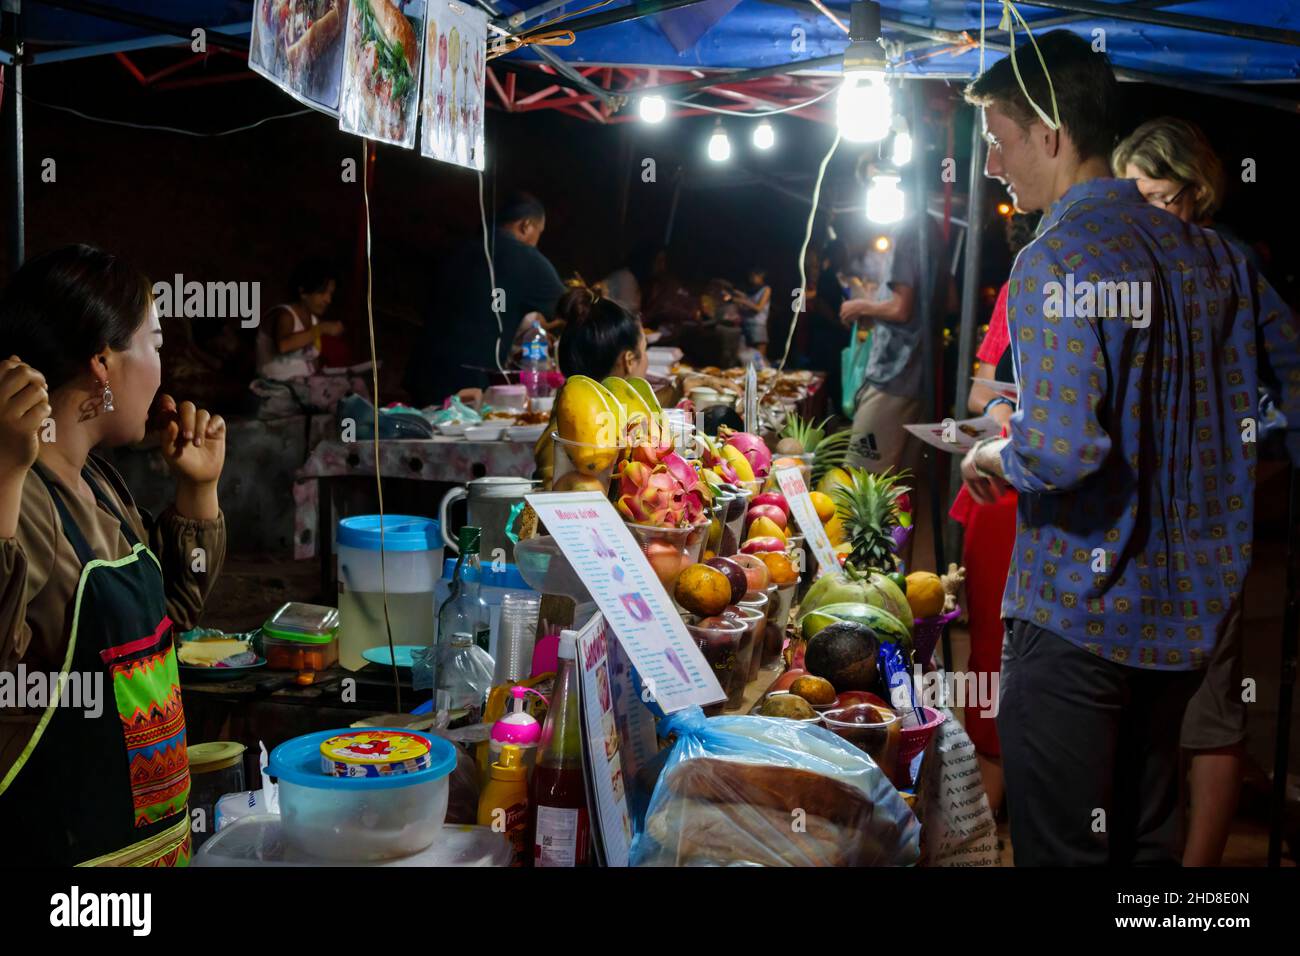 Las frutas y bebidas se encuentran en el mercado nocturno de la calle peatonal en el centro de Luang Prabang, norte de Laos, sudeste asiático Foto de stock